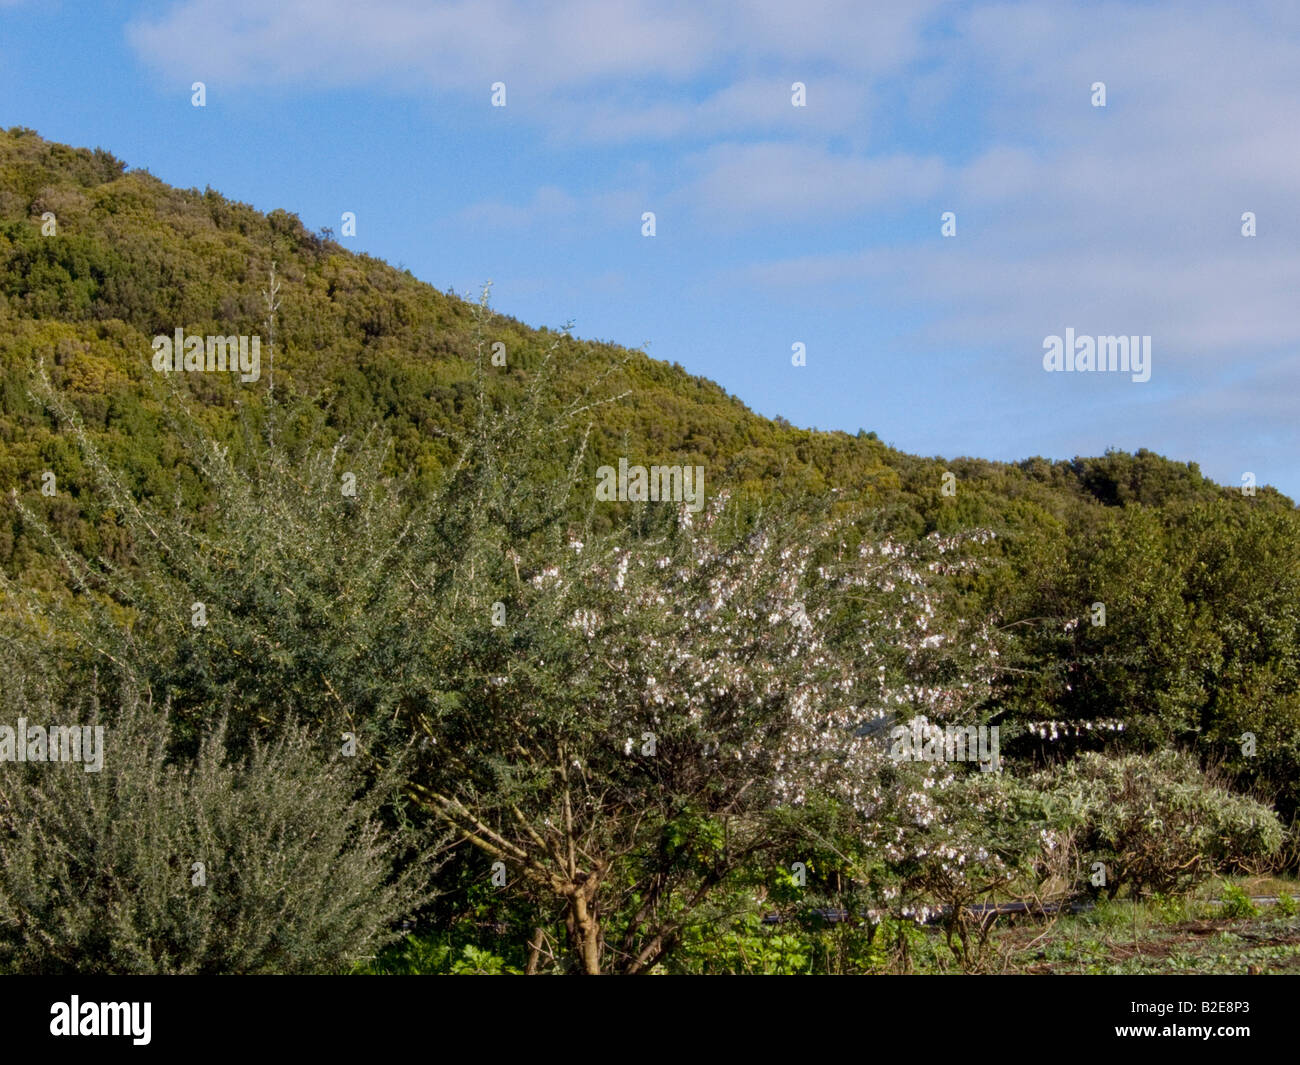 Trees on landscape near hill, Garajonay National Park, La Gomera, Canary Islands, Spain Stock Photo